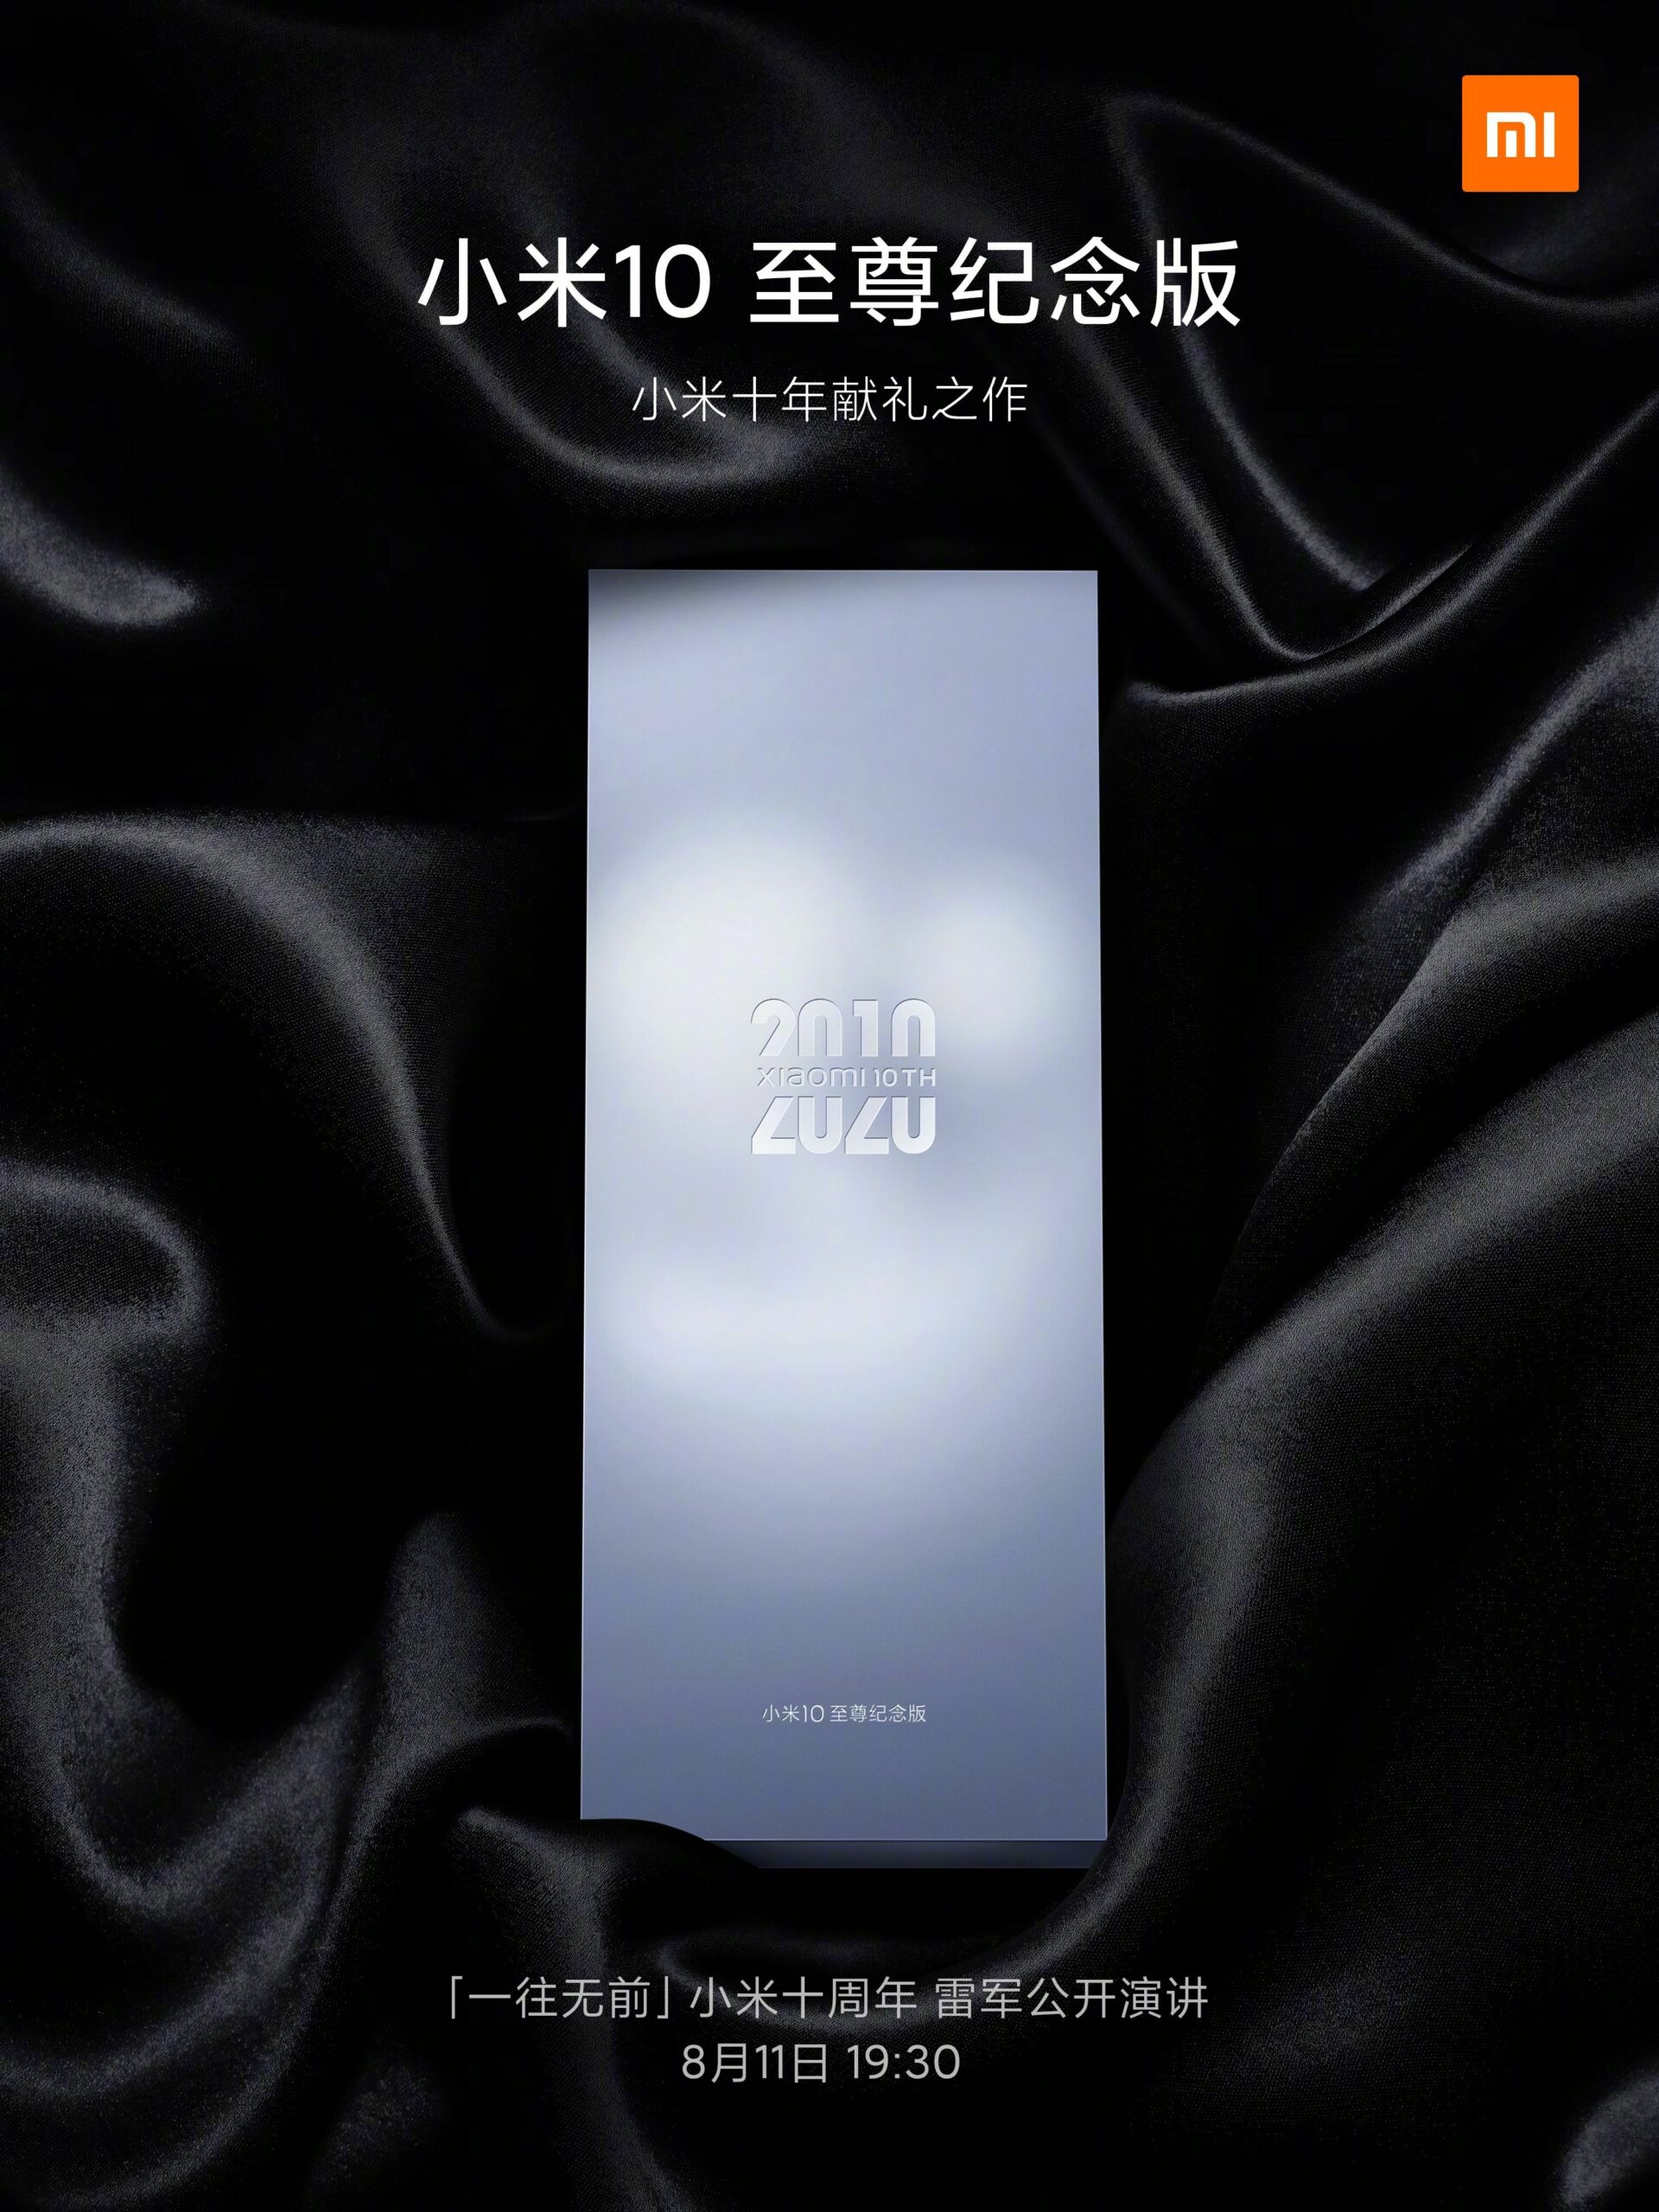 Xiaomi Mi 10 Extreme Phiên bản kỷ niệm ra mắt ngày 11 tháng XNUMX